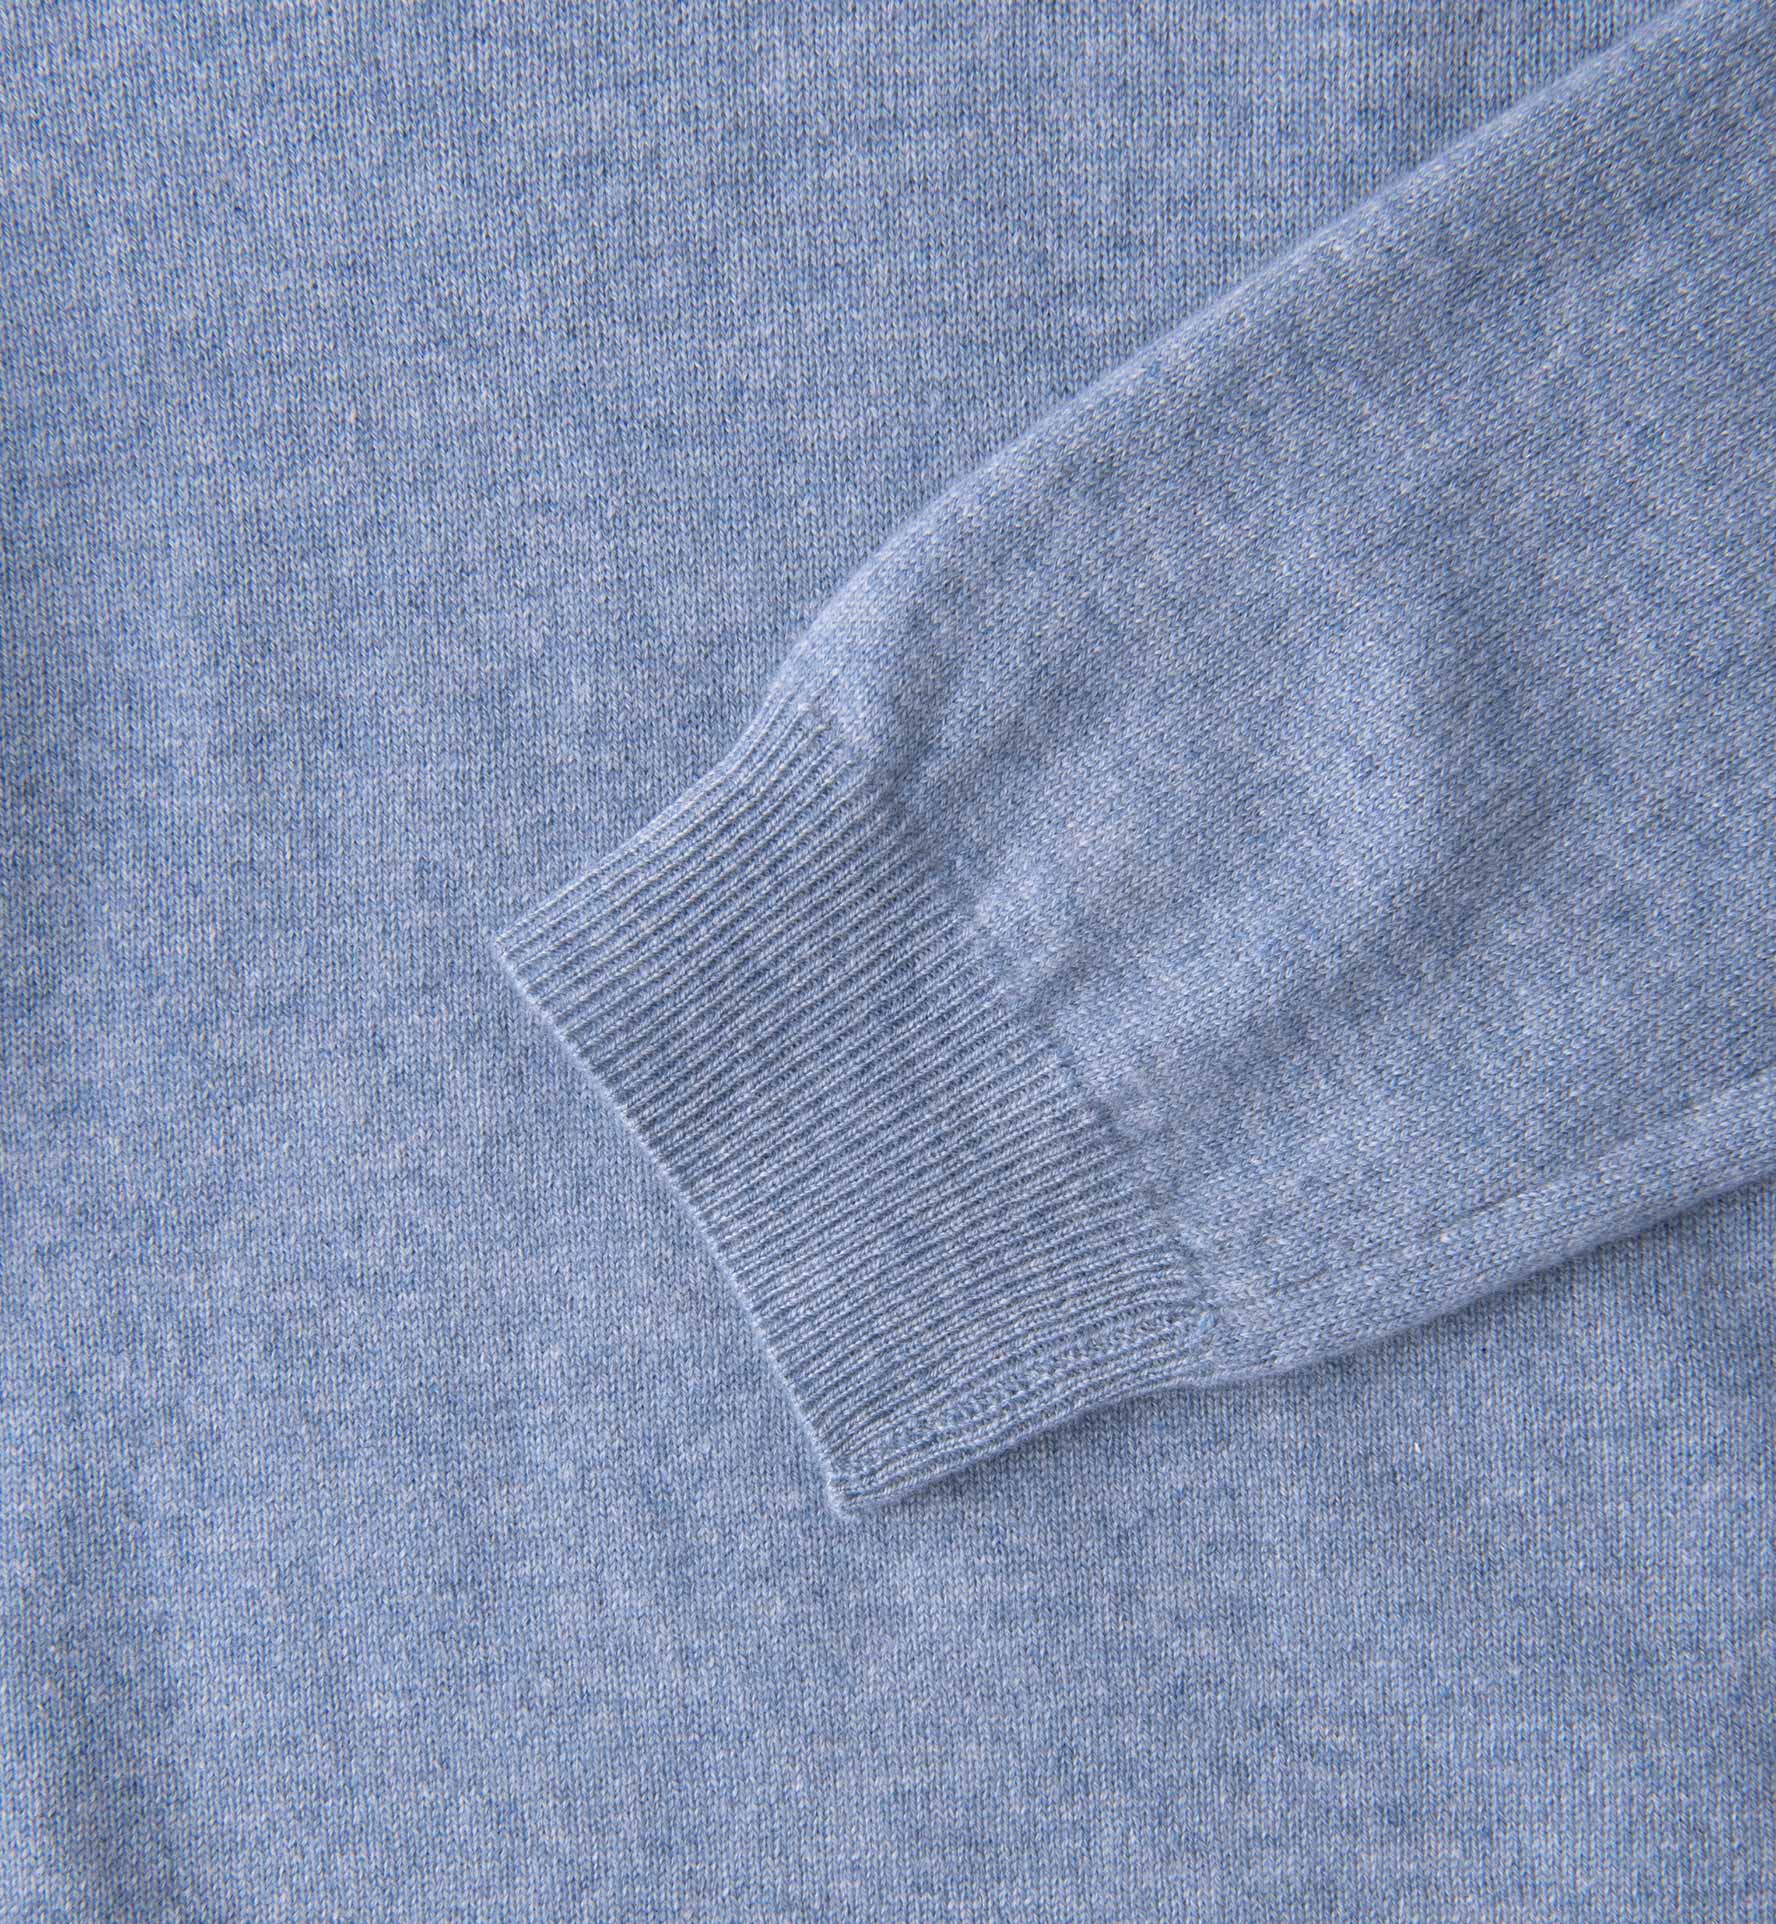 Light Blue Melange Cashmere V-Neck Sweater by Proper Cloth